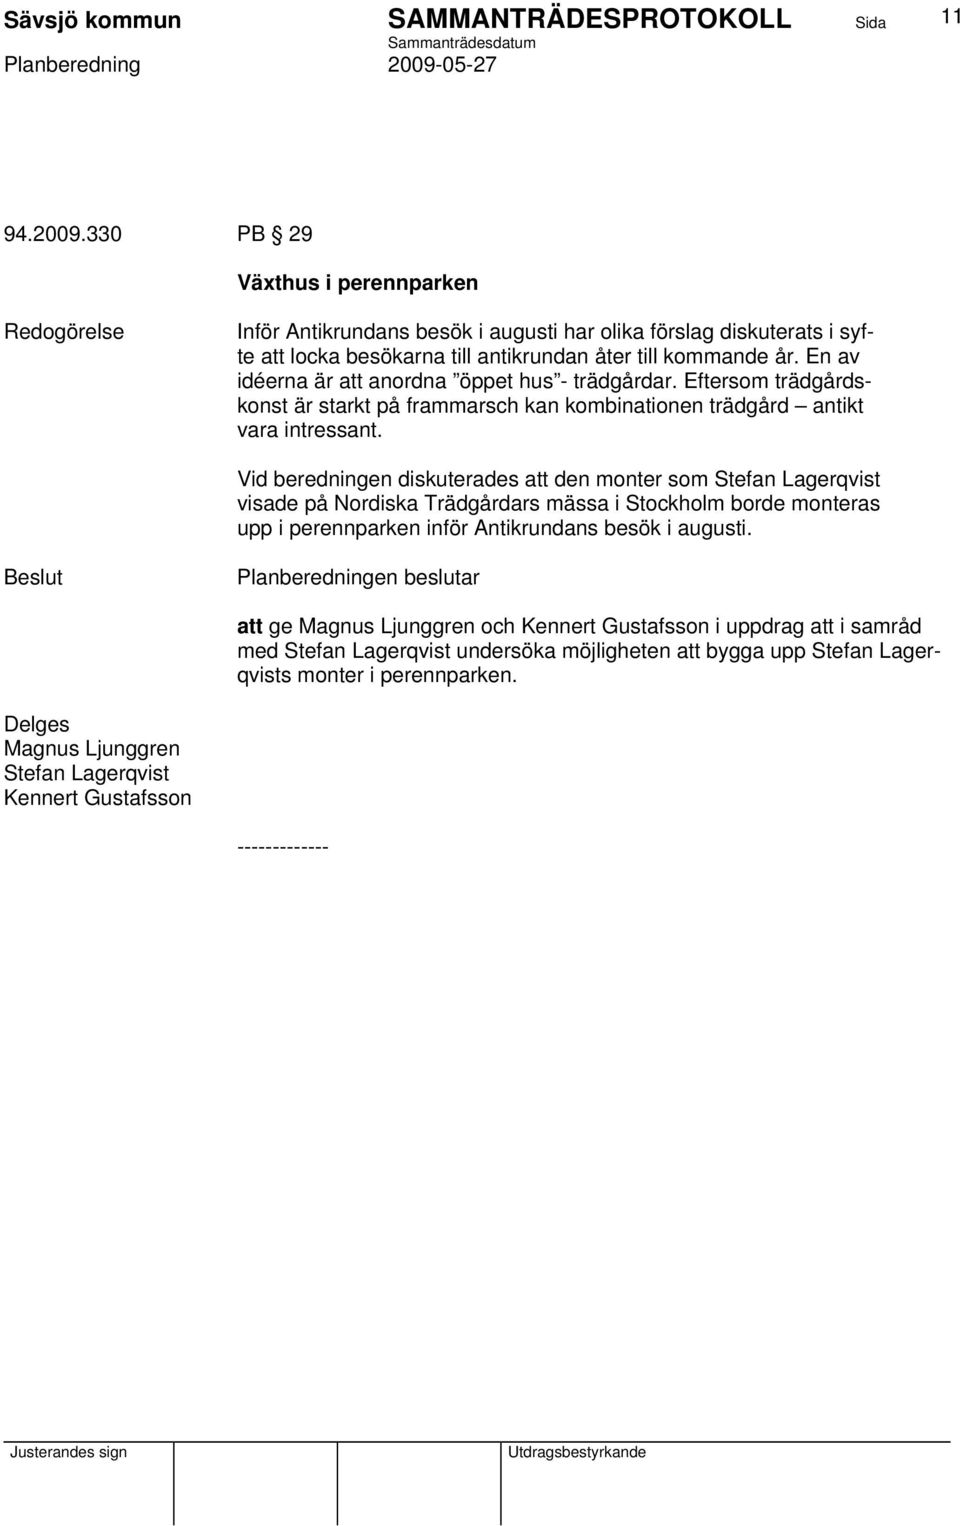 Vid beredningen diskuterades att den monter som Stefan Lagerqvist visade på Nordiska Trädgårdars mässa i Stockholm borde monteras upp i perennparken inför Antikrundans besök i augusti.